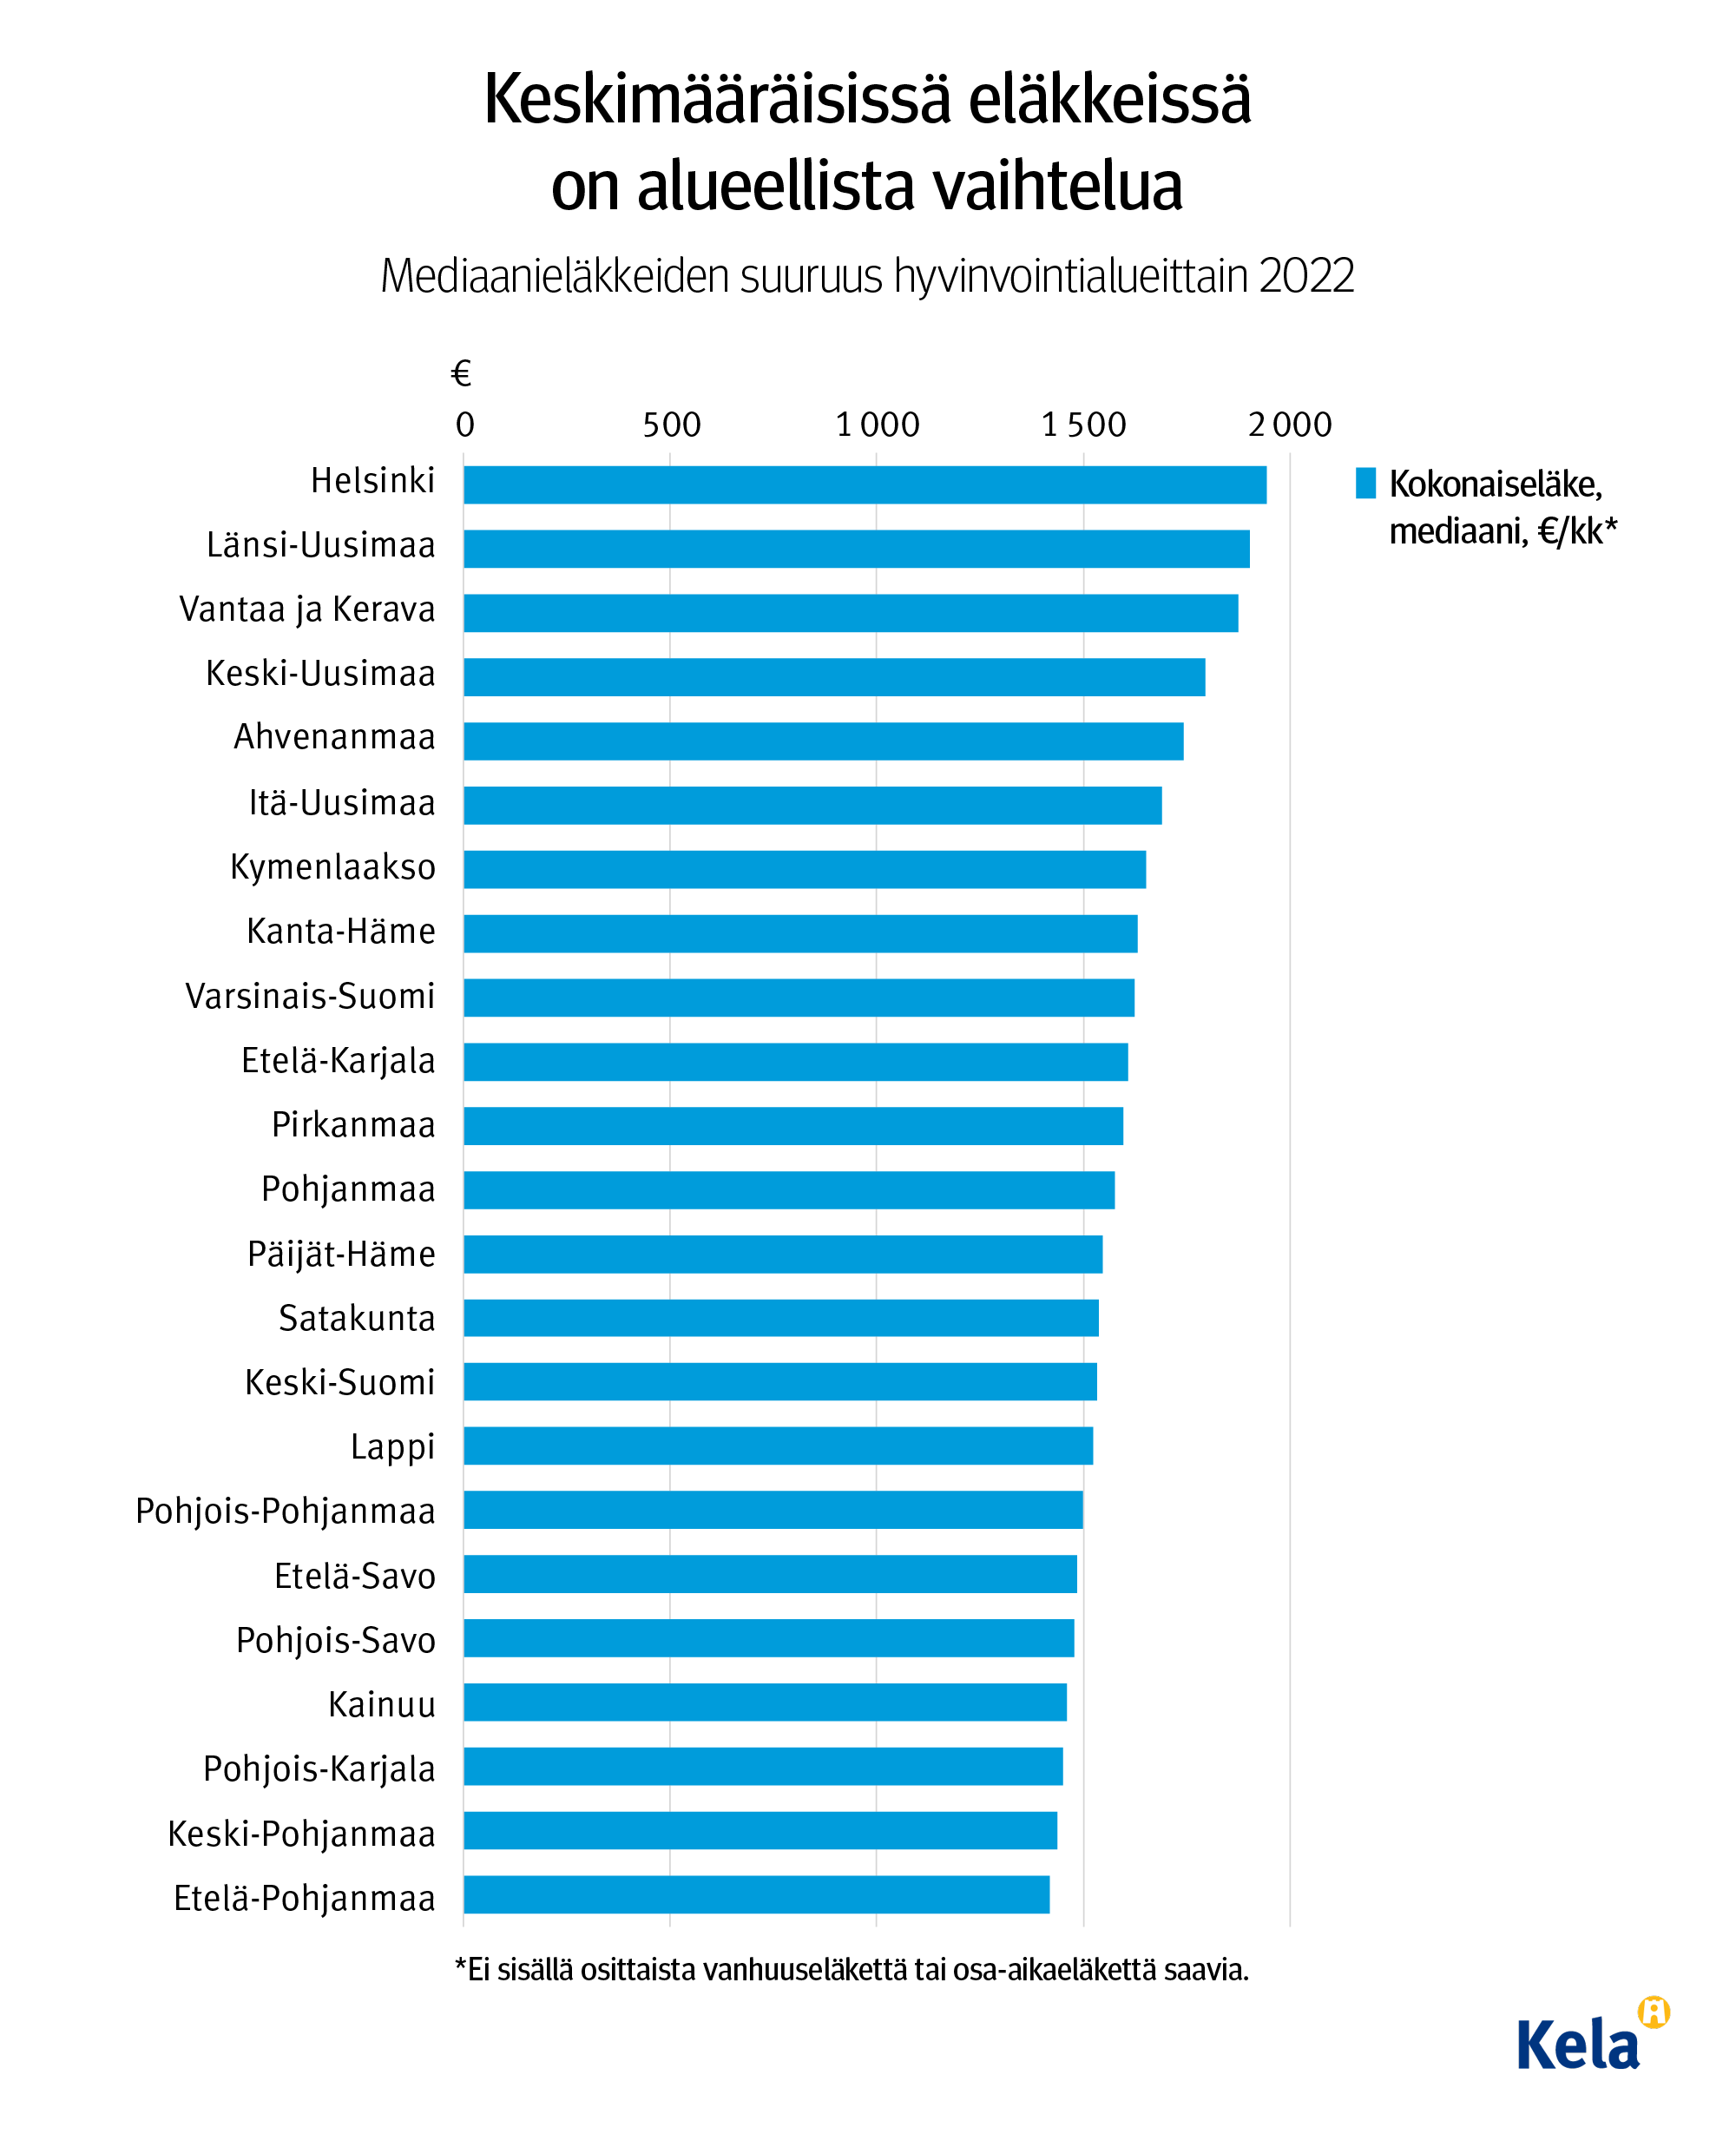 Kuvion otsikko: Keskimääräisissä eläkkeissä on alueellista vaihtelua. Kuvio näyttää mediaanieläkkeiden suuruuden hyvinvointialueittain vuonna 2022. Suurimmat eläkkeet ovat Helsingissä ja Länsi-Uudellamaalla, pienemmät Etelä-Pohjanmaalla.